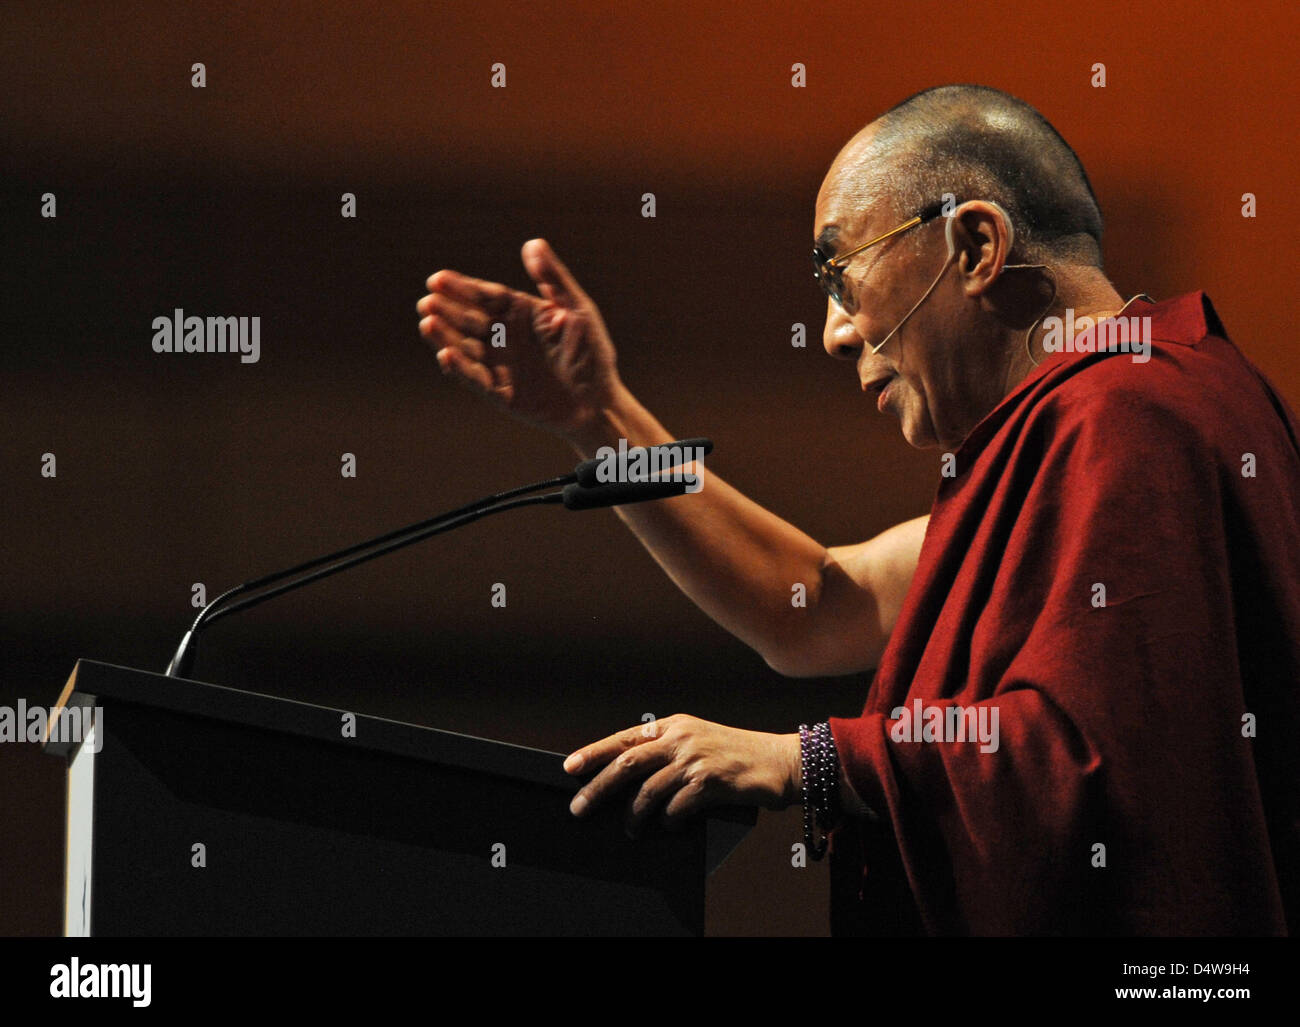 Der Dalai Lama spricht am Dienstag (21.09.2010) in der Dreiländerhalle in Passau (Niederbayern). Der 75-Jährige wird mit dem 'Menschen-in-Europa'-Preis der Verlagsgruppe ('Passauer Neue Presse') ausgezeichnet. Nach Angaben des Verlages werde das politische und religiöse Oberhaupt der Tibeter für sein vorbildliches Wirken geehrt. Bis Dezember sind in Passau Ausstellungen und mehrere Stock Photo